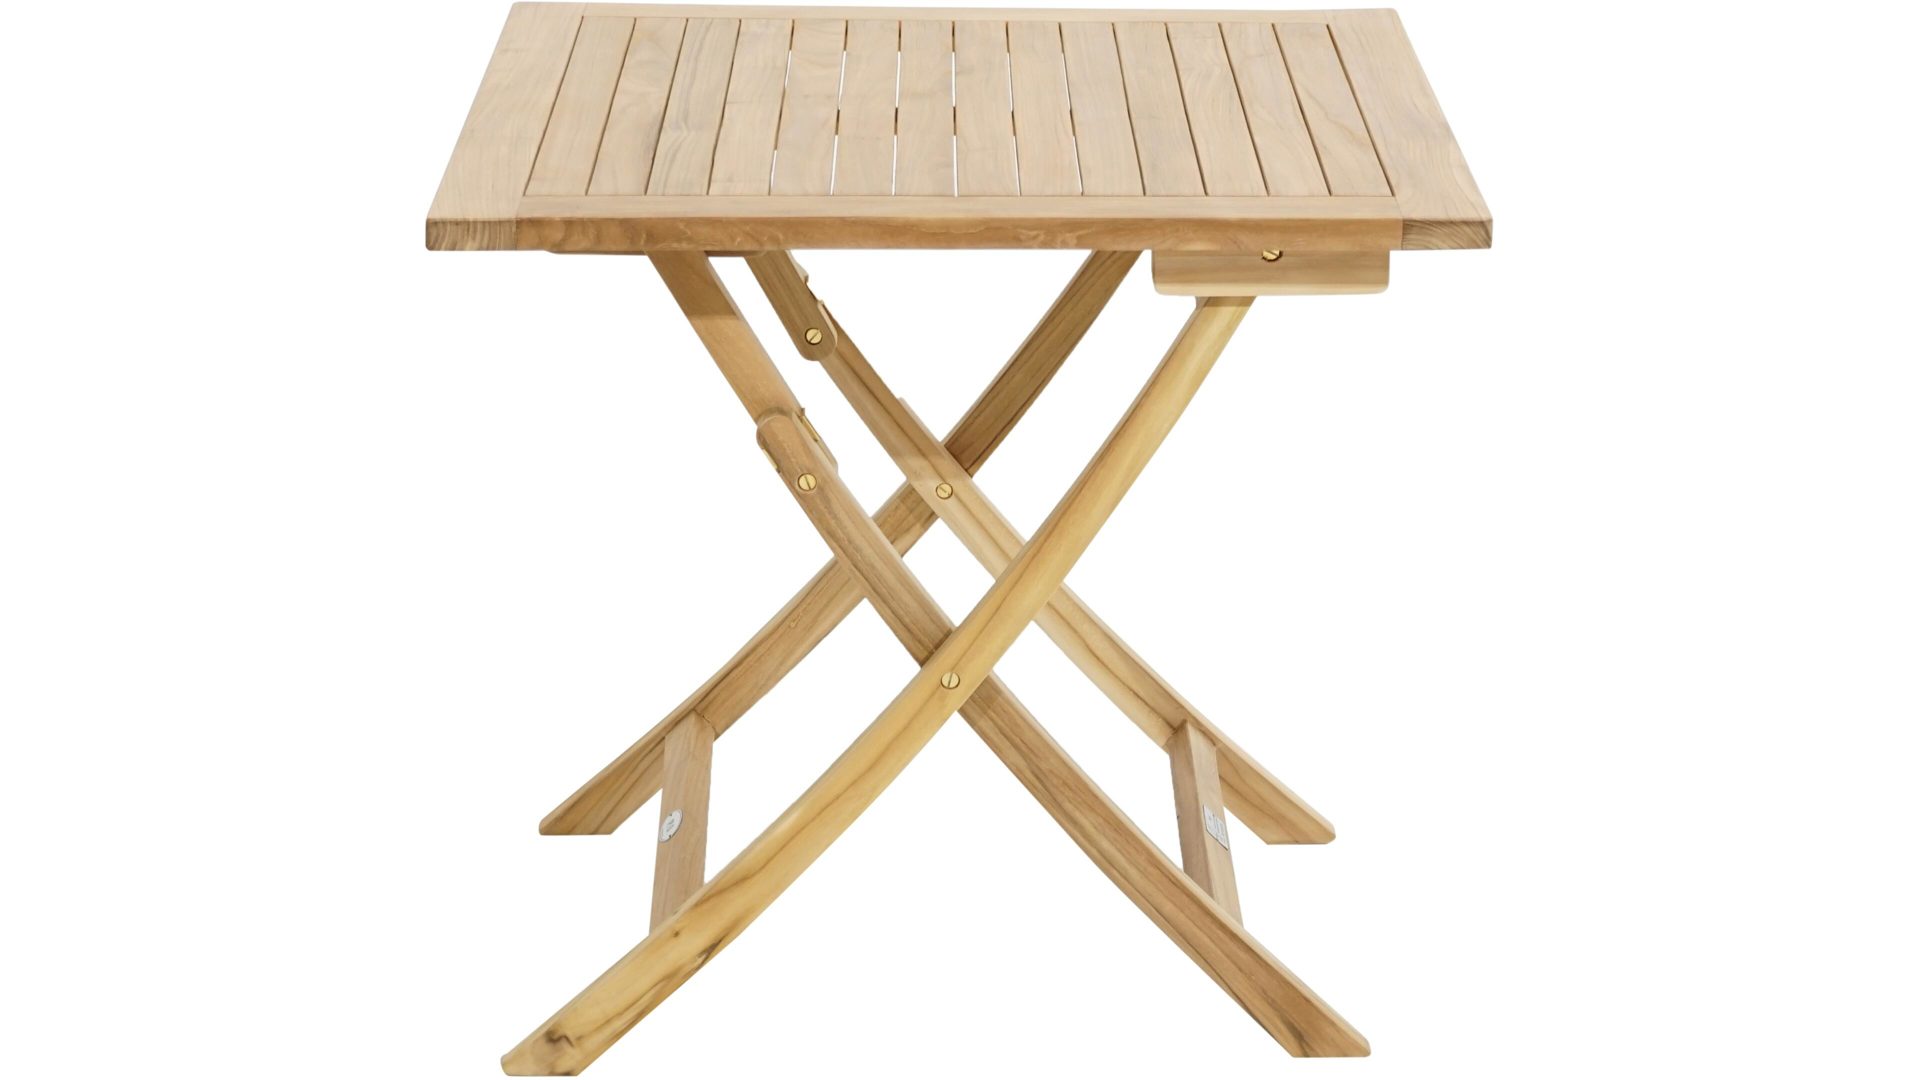 Gartentisch Ploß aus Holz in Holzfarben Ploß® Klapptisch York als Gartenmöbel honigfarbenes Teakholz – ca. 80 x 80 cm